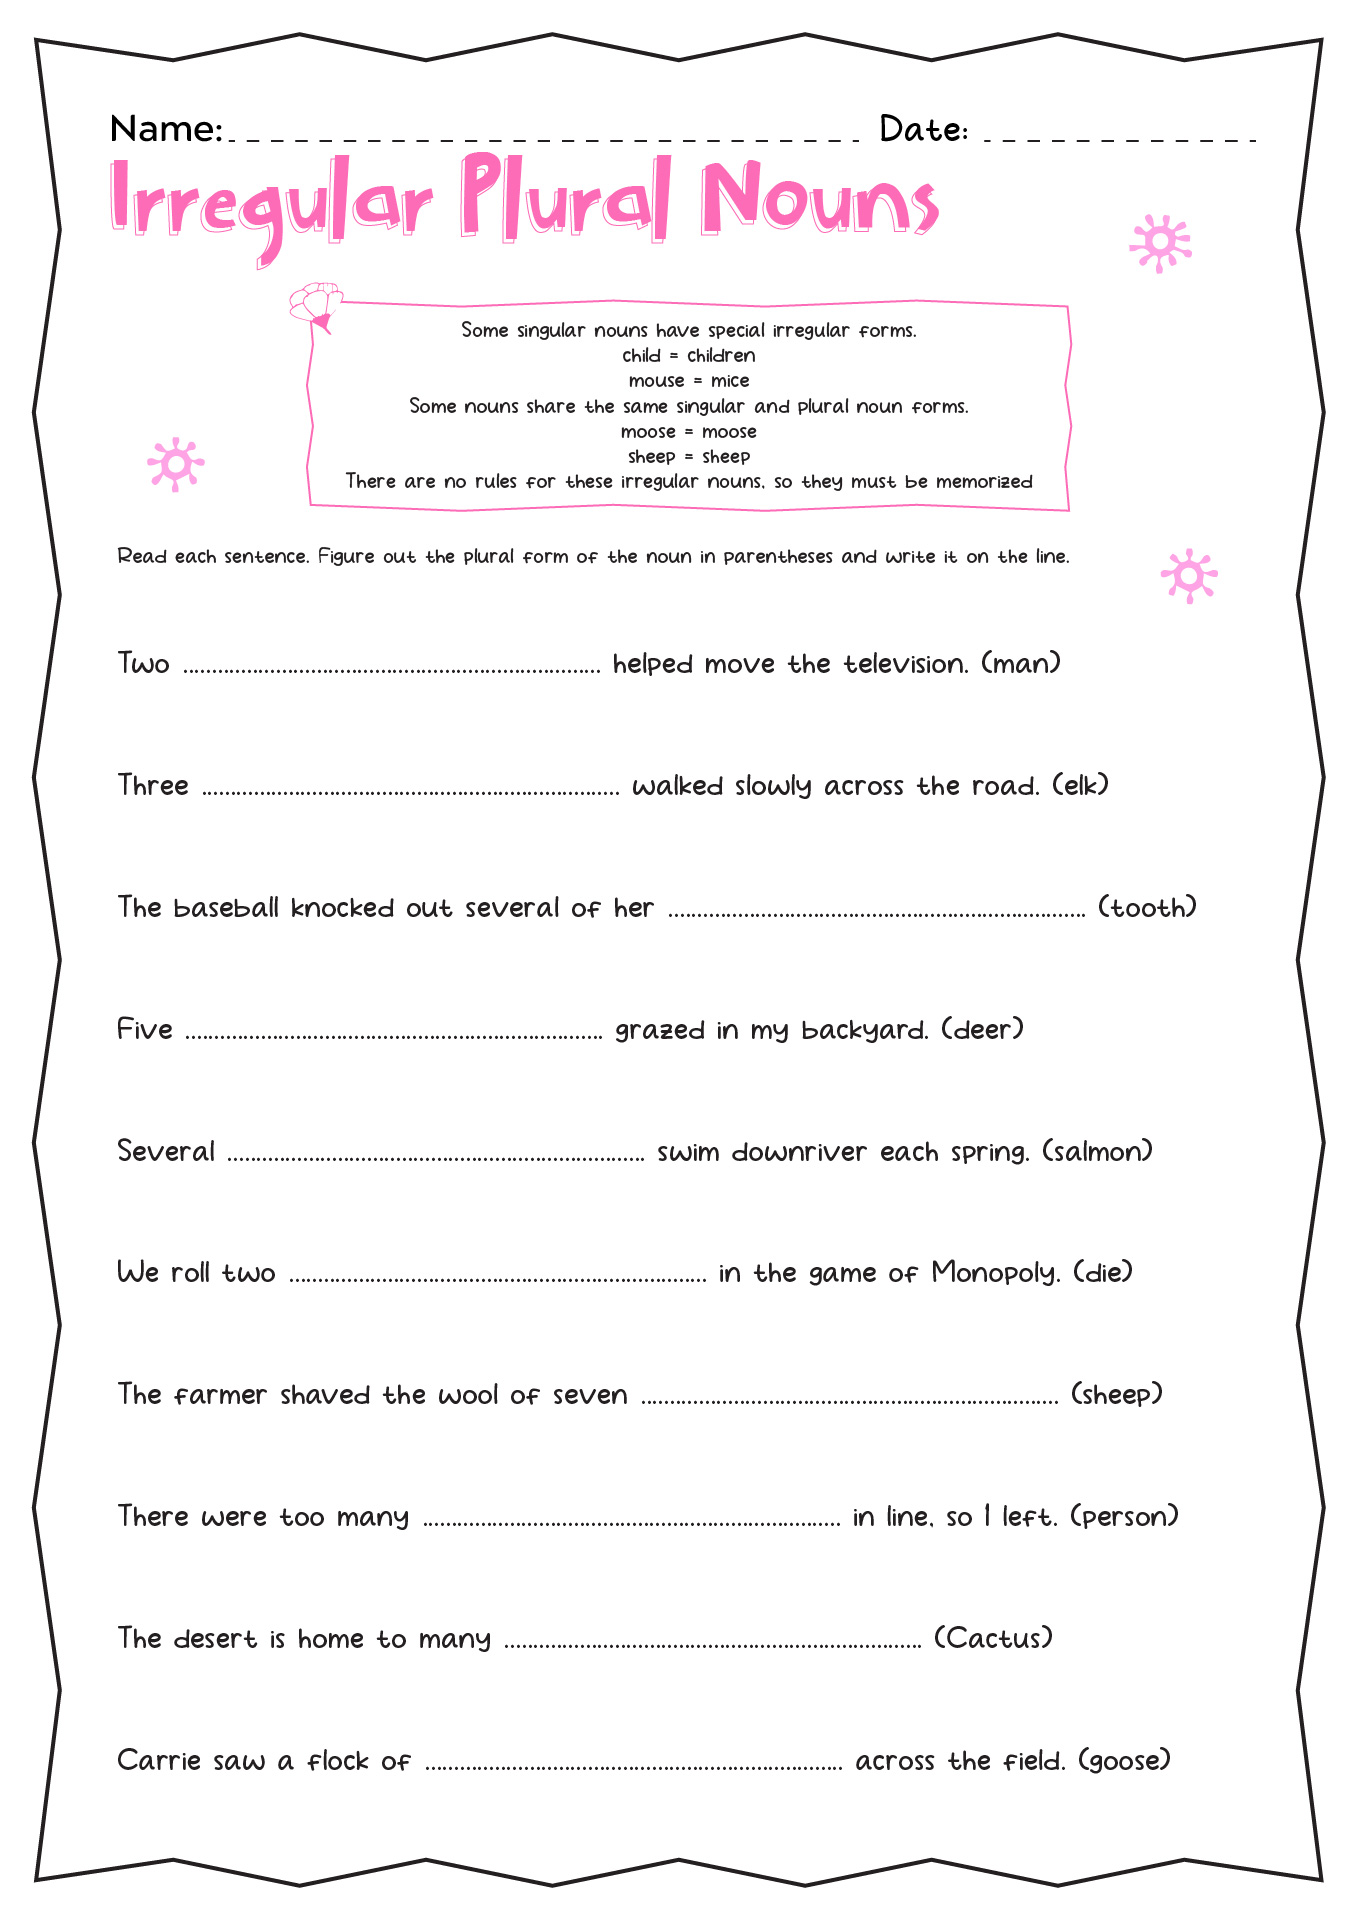 Irregular Plural Nouns Worksheet 2nd Grade Image